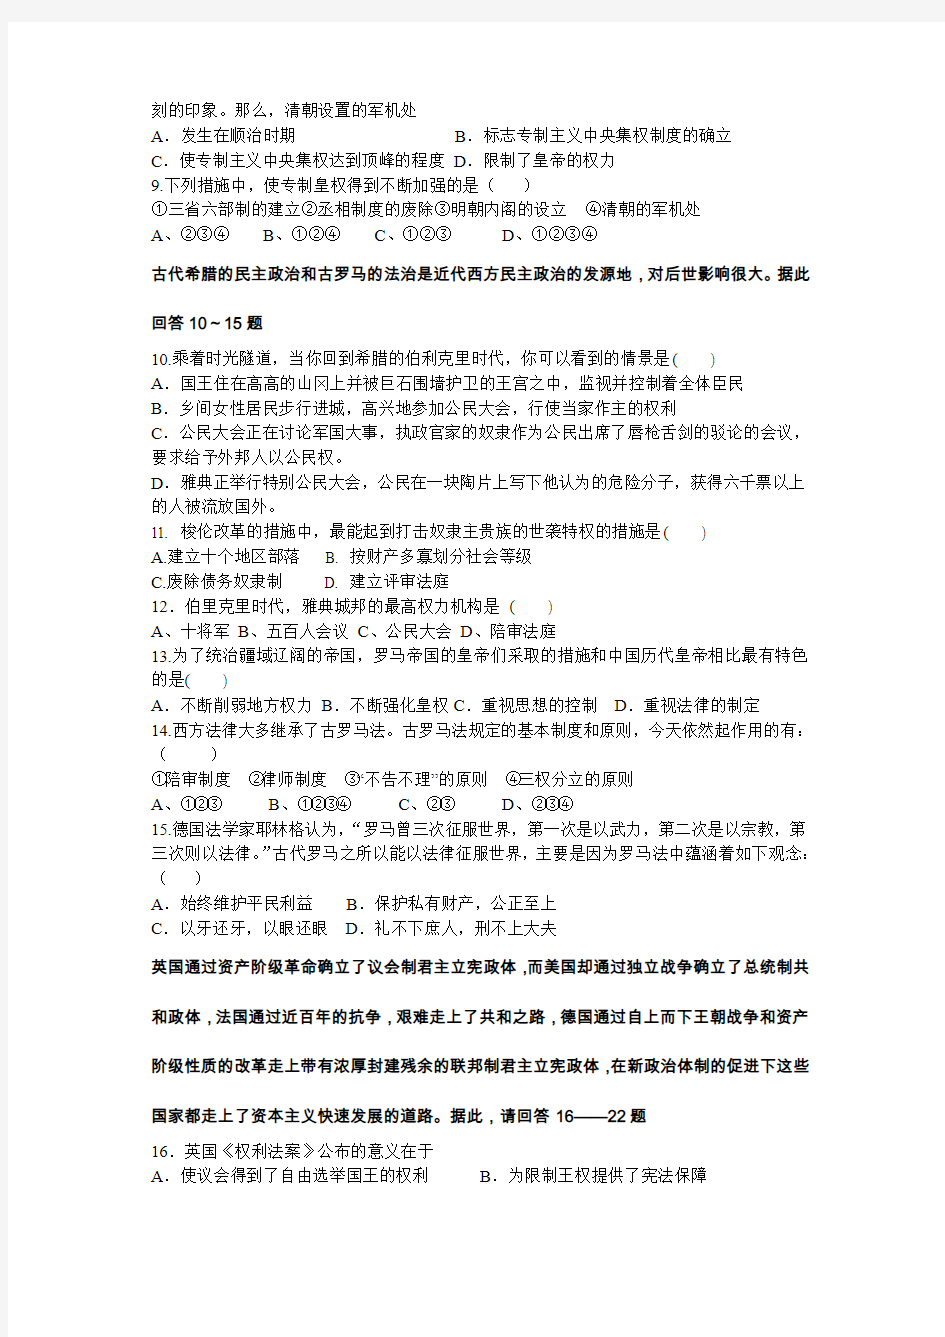 重庆市巫山大昌中学校高2017级秋季历史期末检测试题(正式稿)